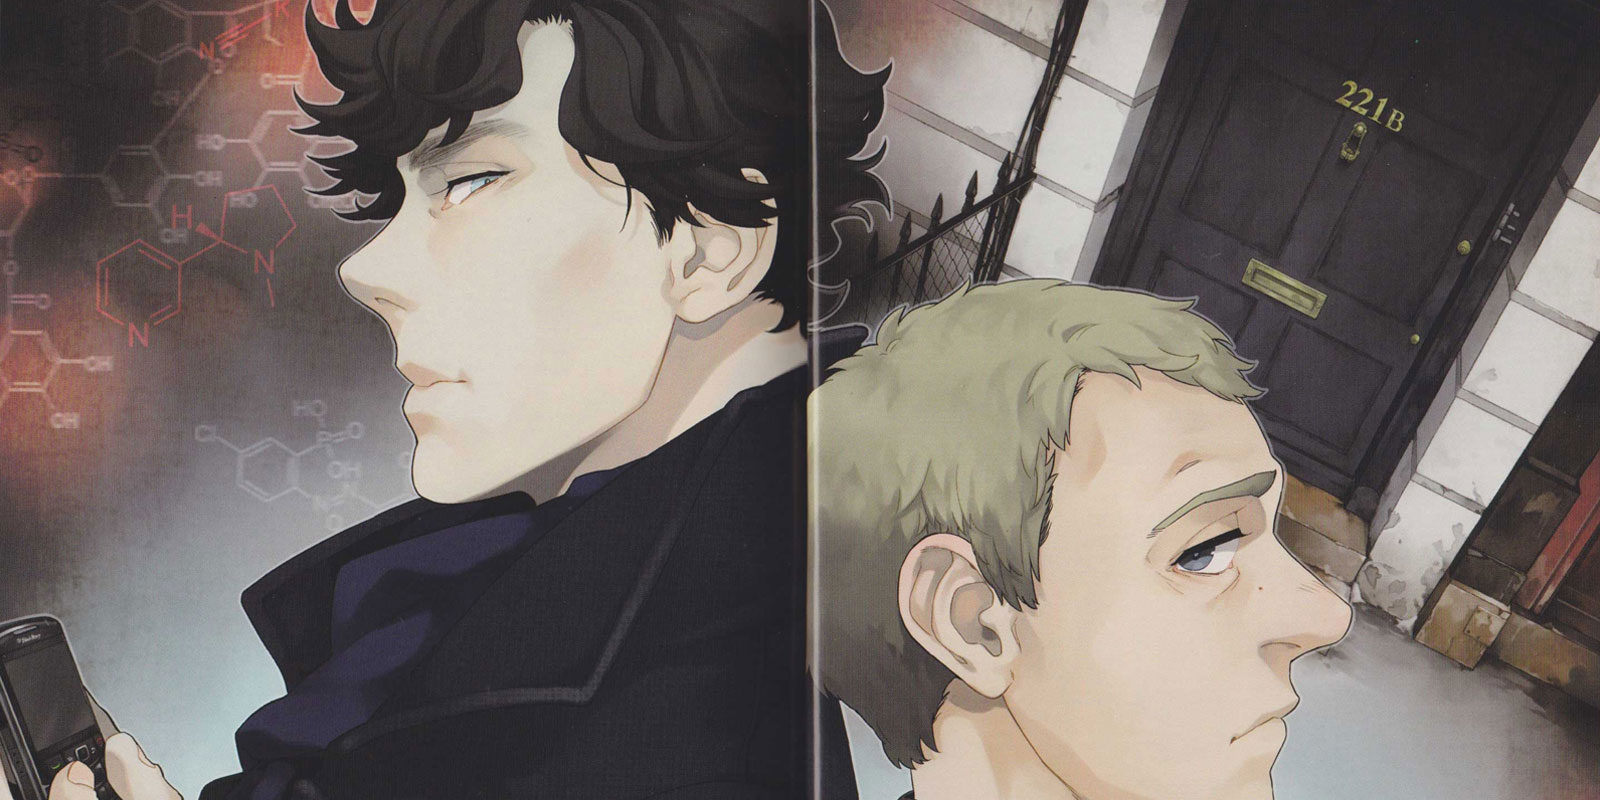 La adaptación de 'Sherlock' al manga será editada en España